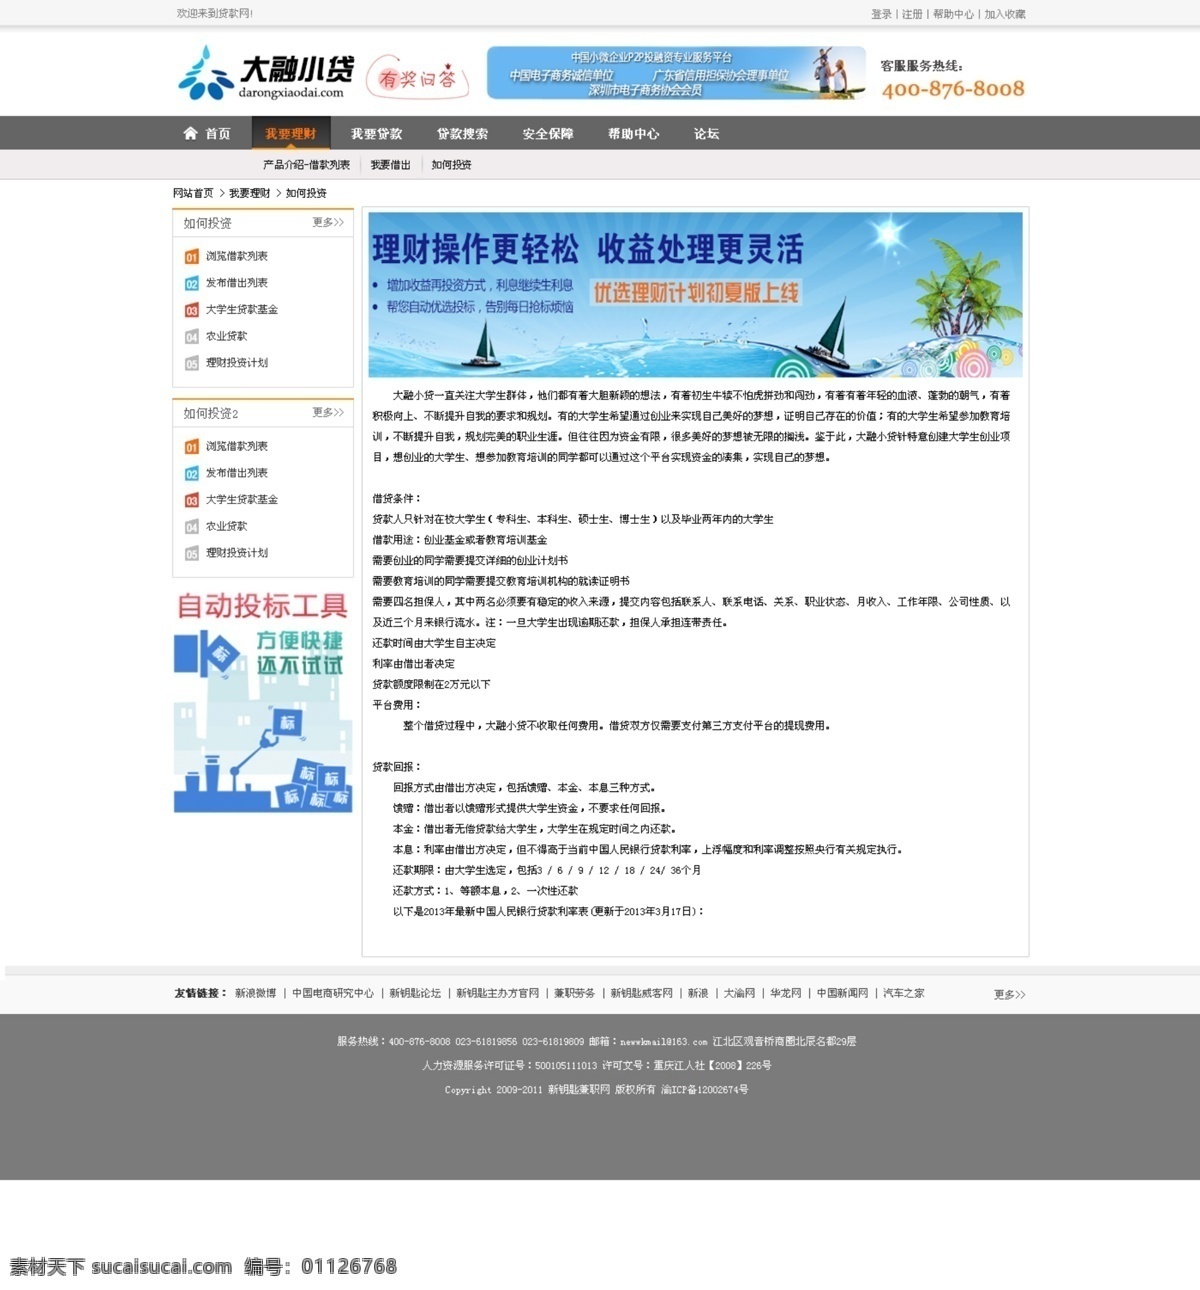 p2p 金融 帮助 中心 页面 首页 贷款 投资 理财 帮助中心 web 界面设计 中文模板 白色